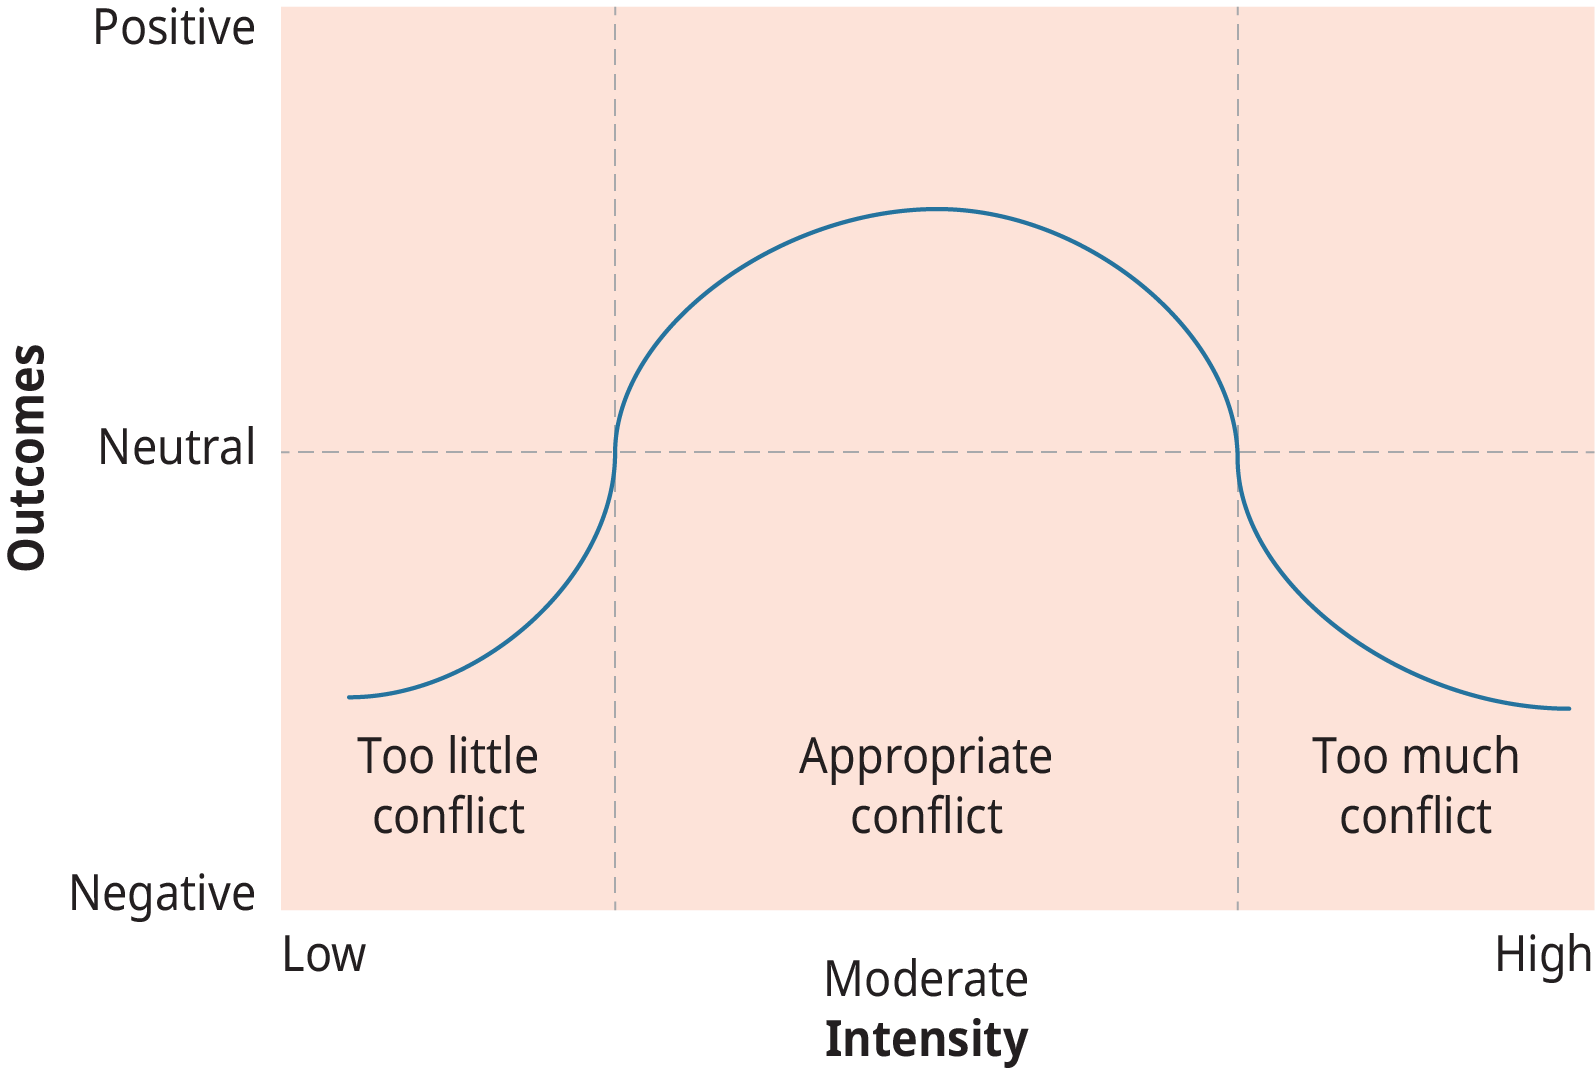 رسم بياني يمثل العلاقة بين شدة الصراع والنتائج.